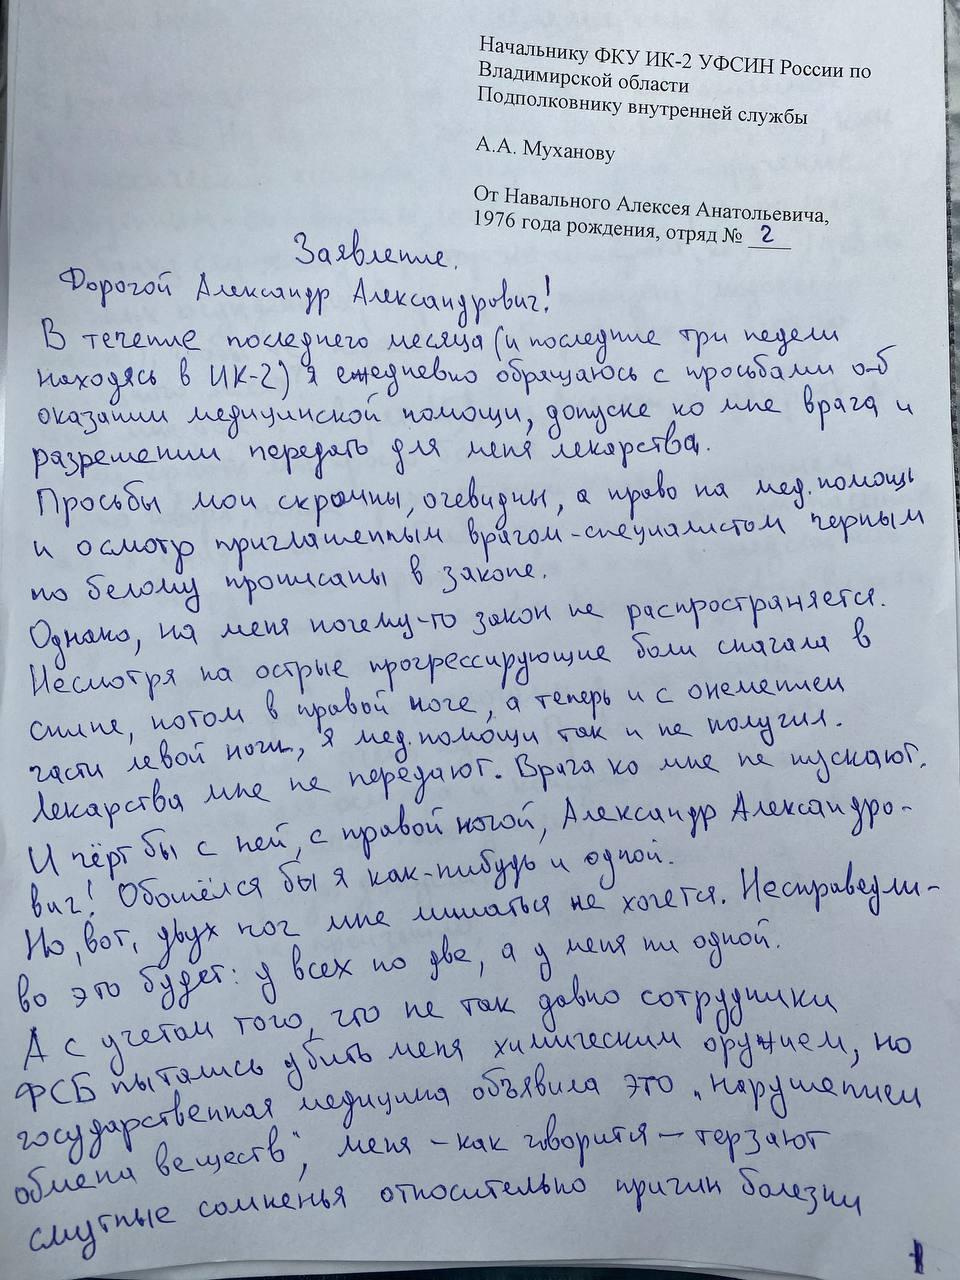 Фото заявления Навального опубликовали в его аккаунтах в соцсетях